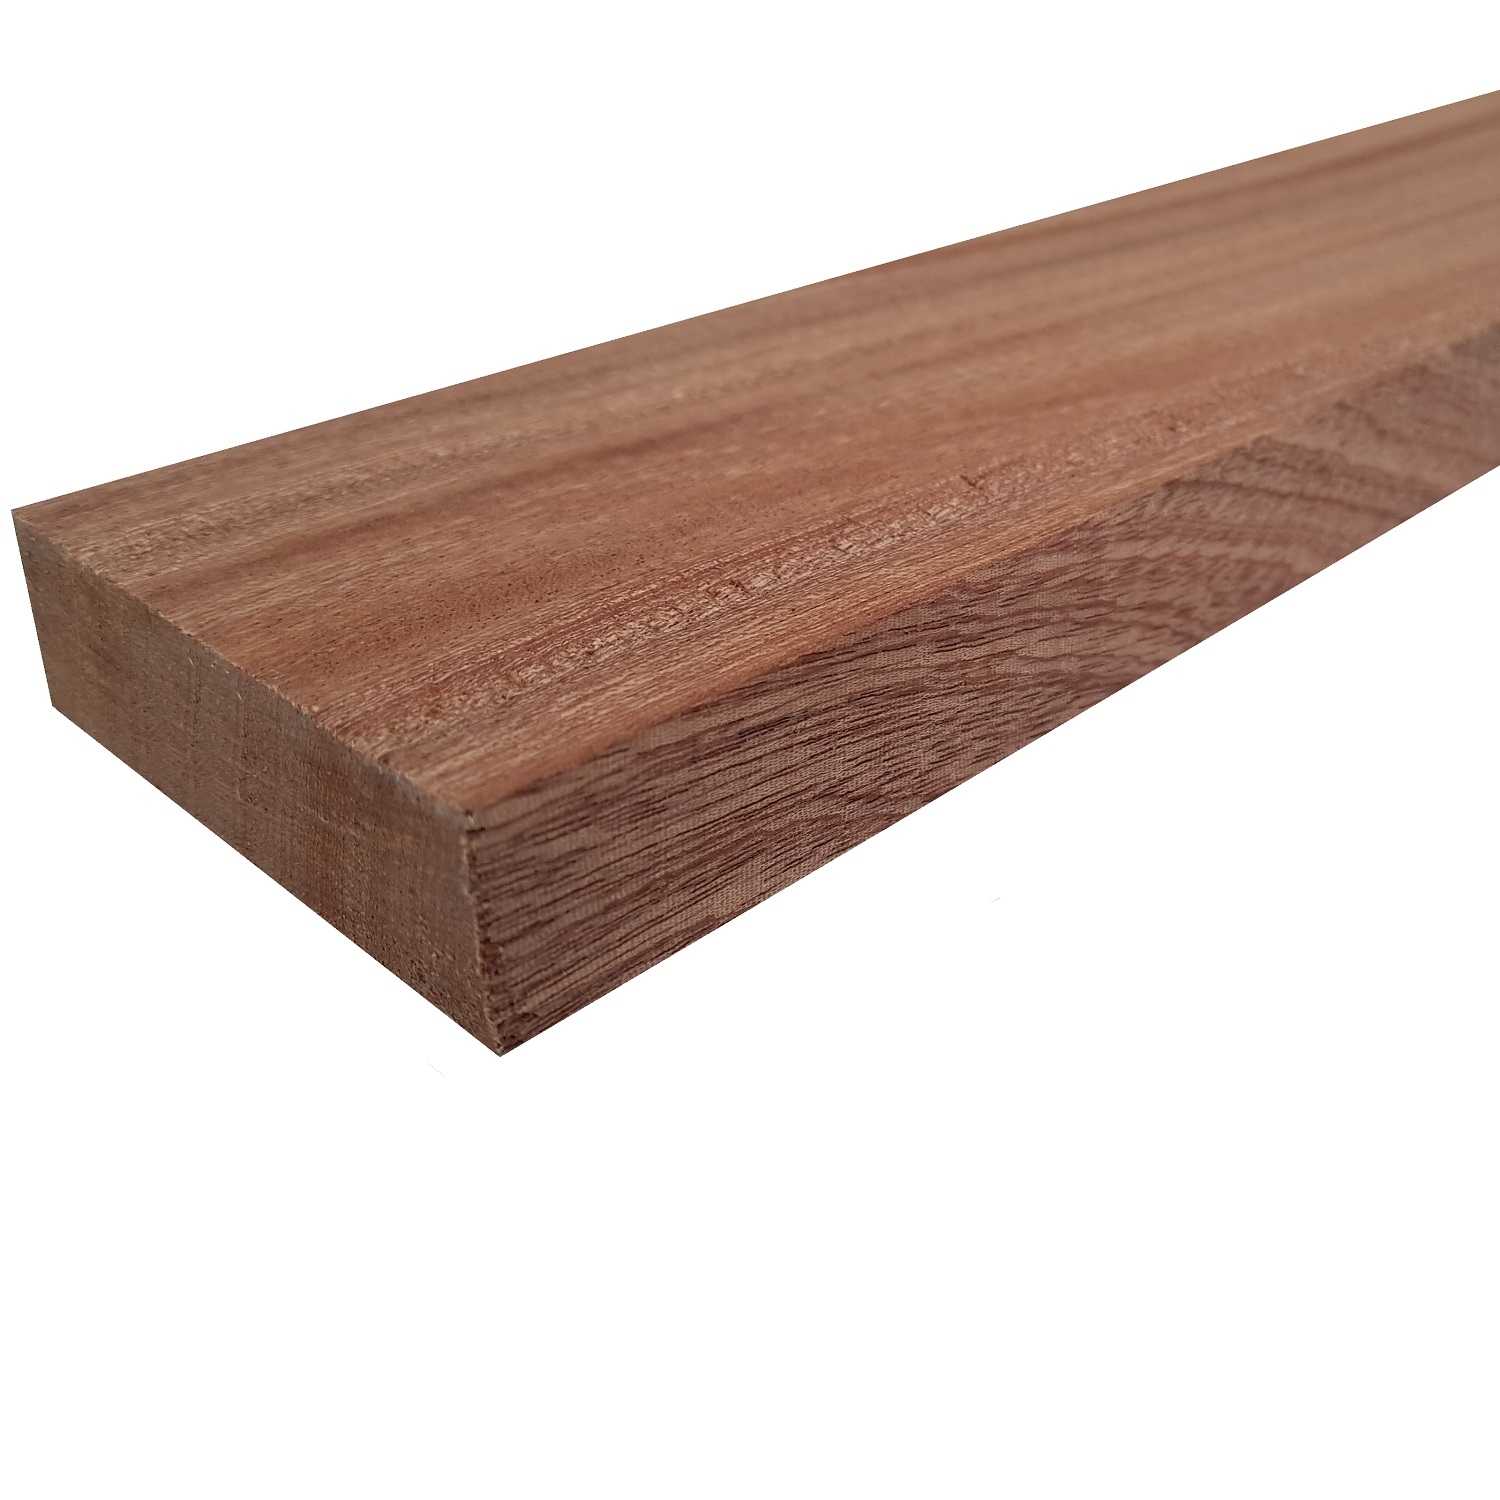 Tavola legno di Mogano Refilato Piallato mm 21 x 130 x 1550